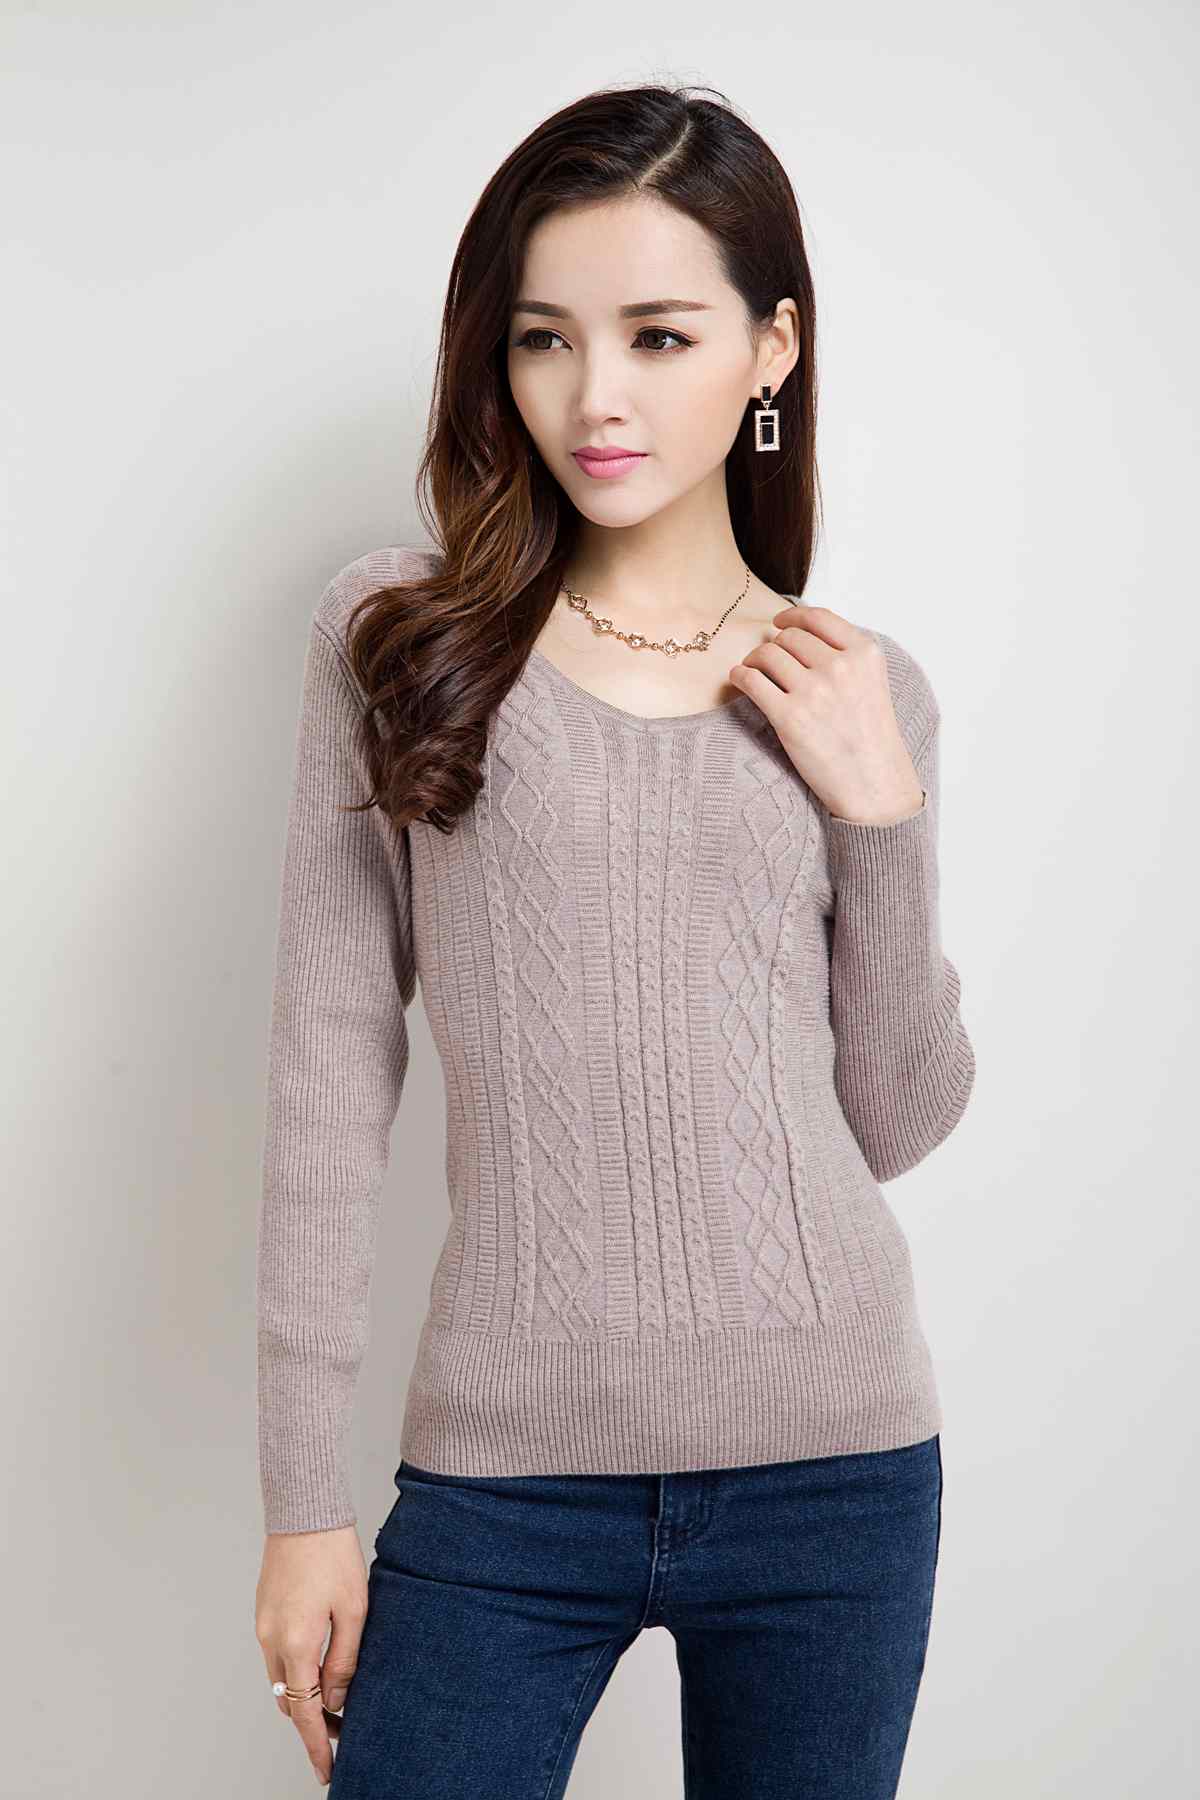 杜拉蒙 新款女士时尚韩版休闲针织衫 DY8422